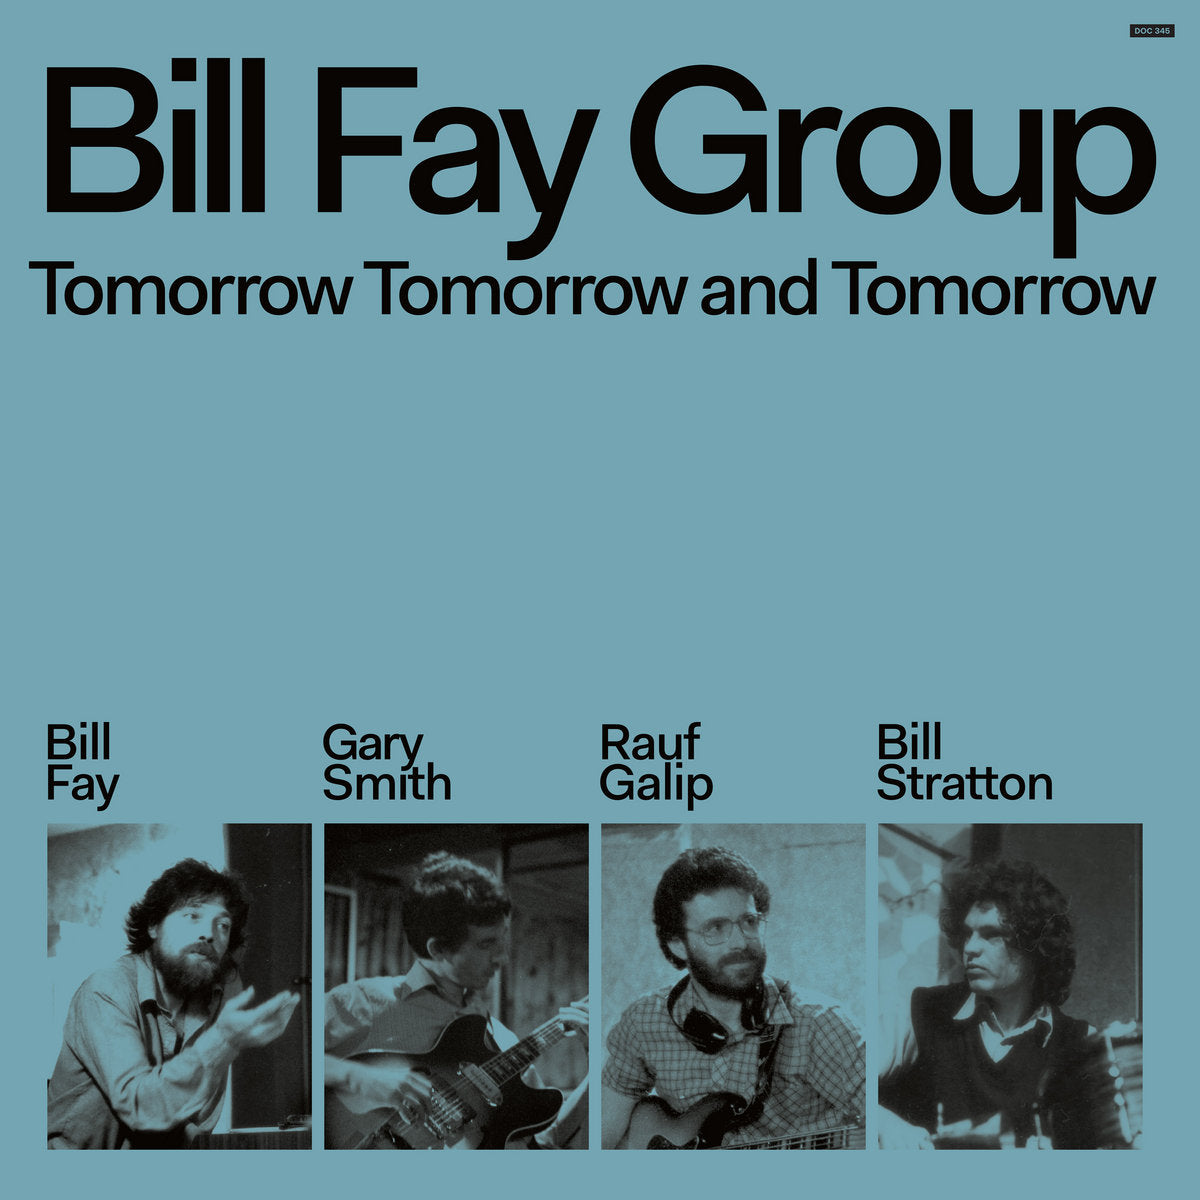 Bill Fay Group: Tomorrow Tomorrow And Tomorrow (Vinyl 2xLP)